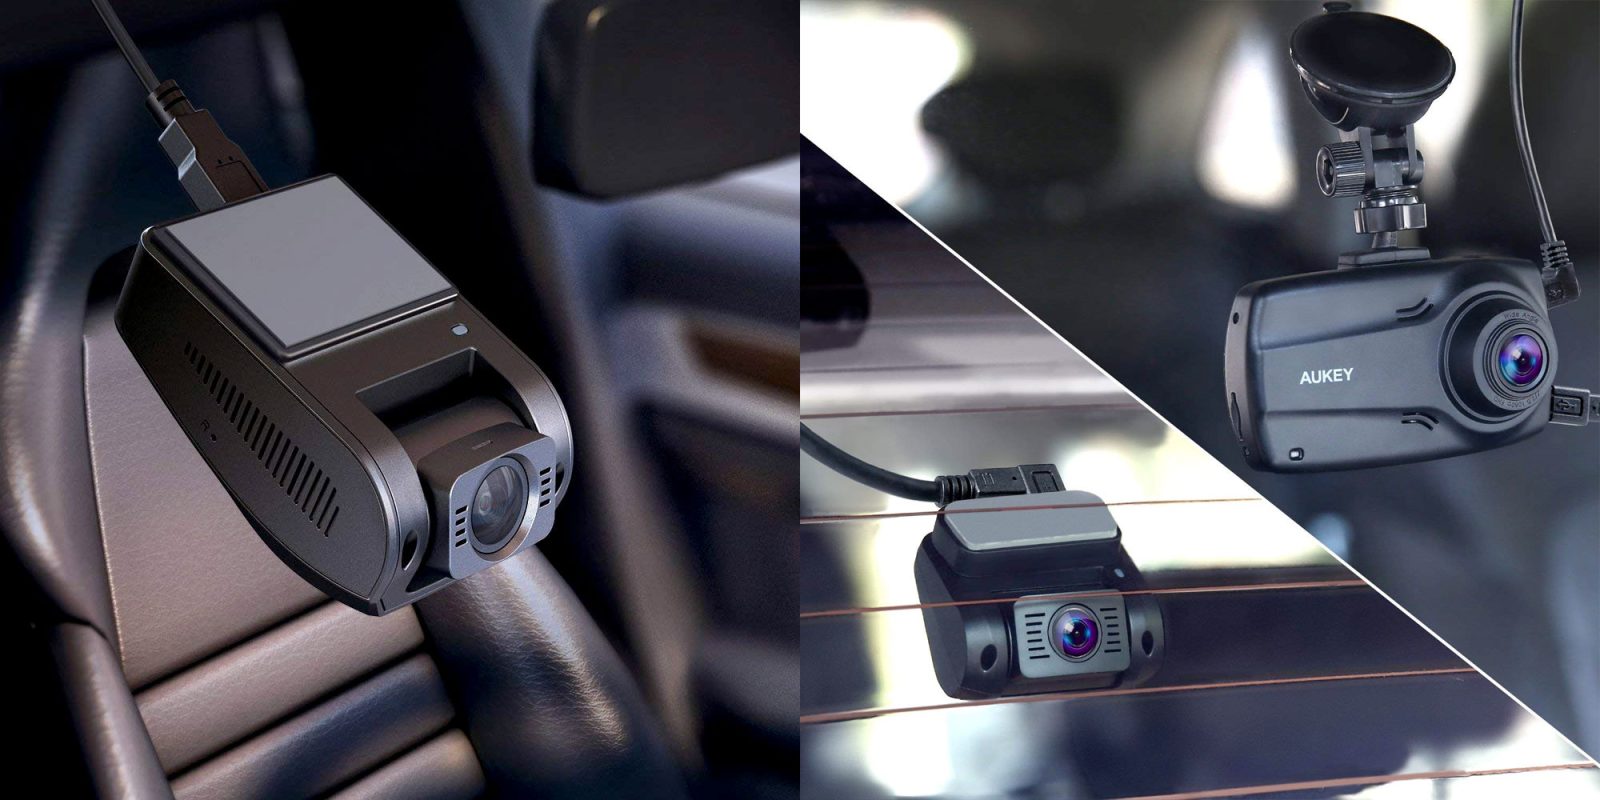 Telecamera auto Dash Cam come scegliere | Recensione Aukey 4K DR02J